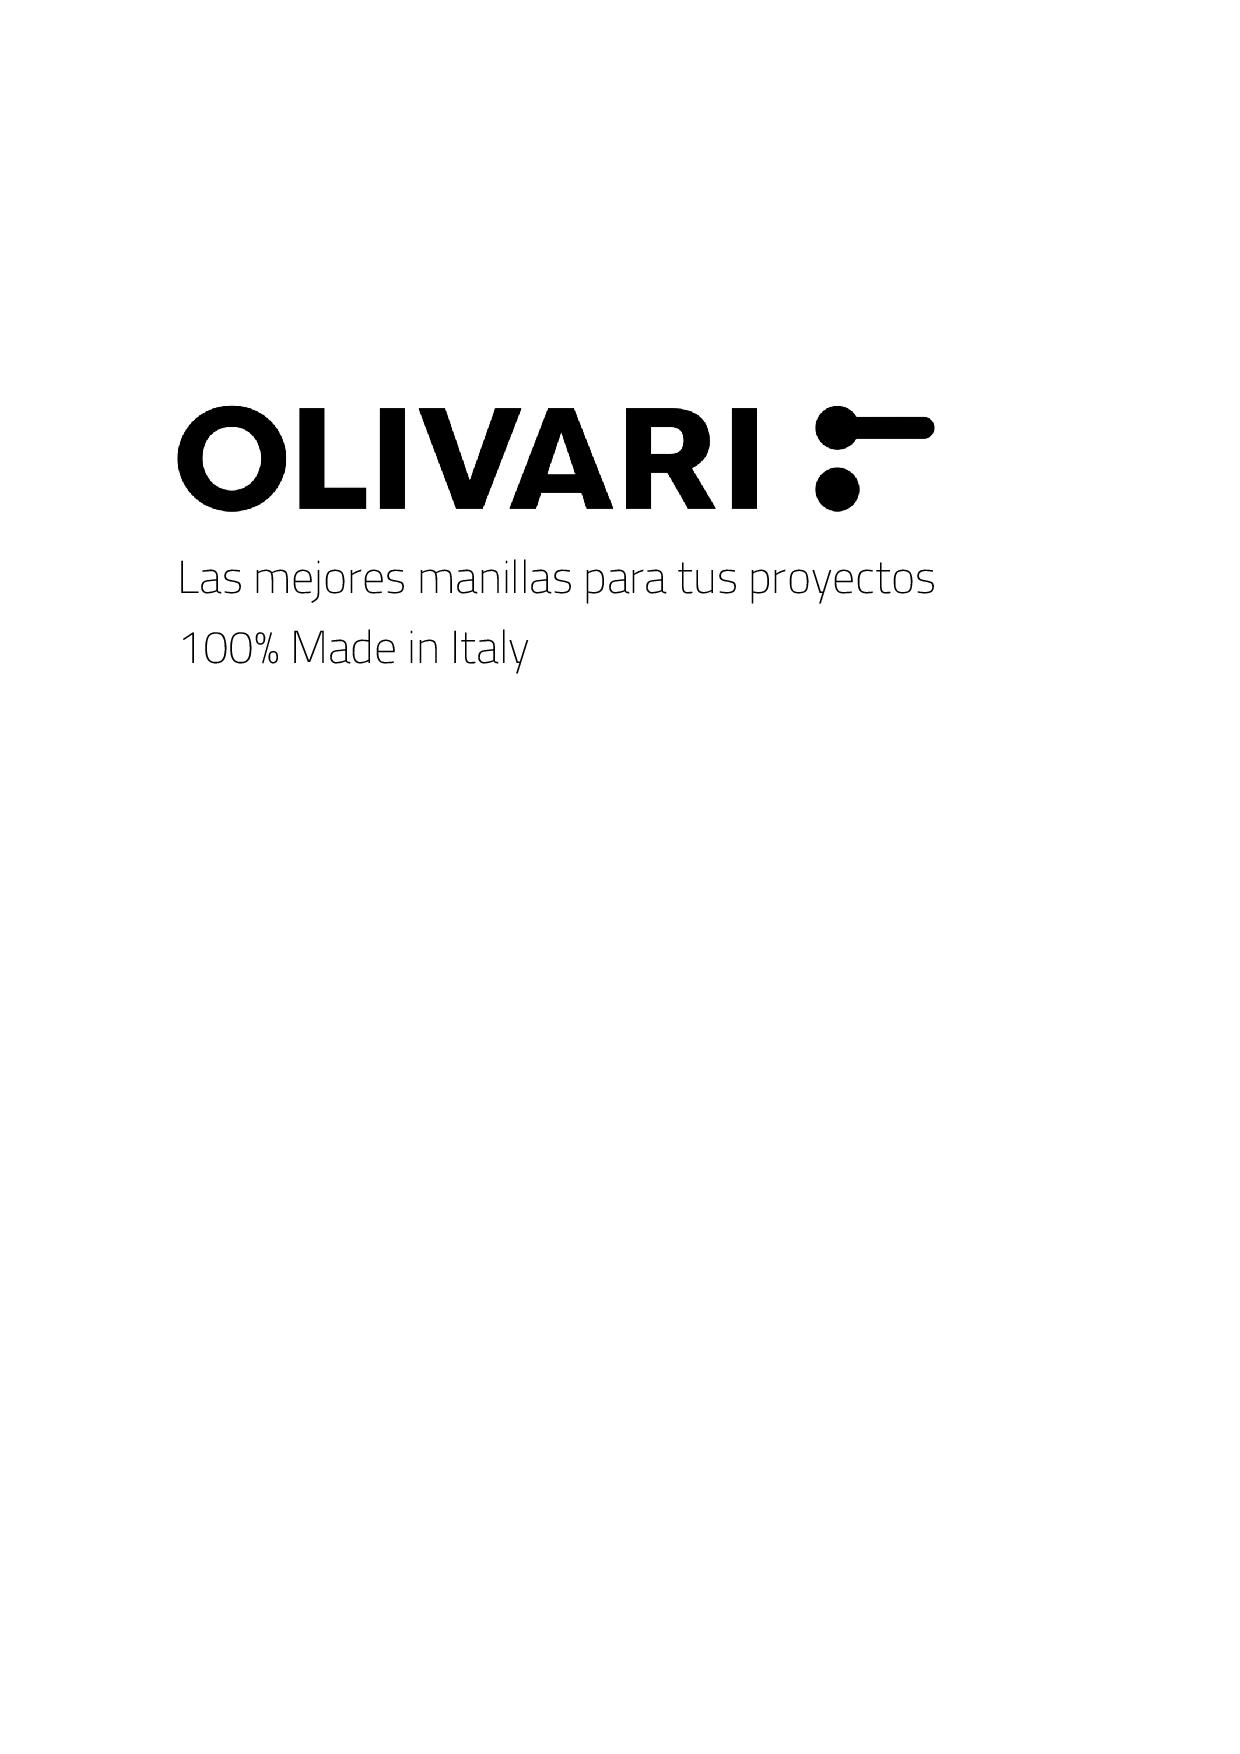 OLIVARI Manillas 100% Made in Italy